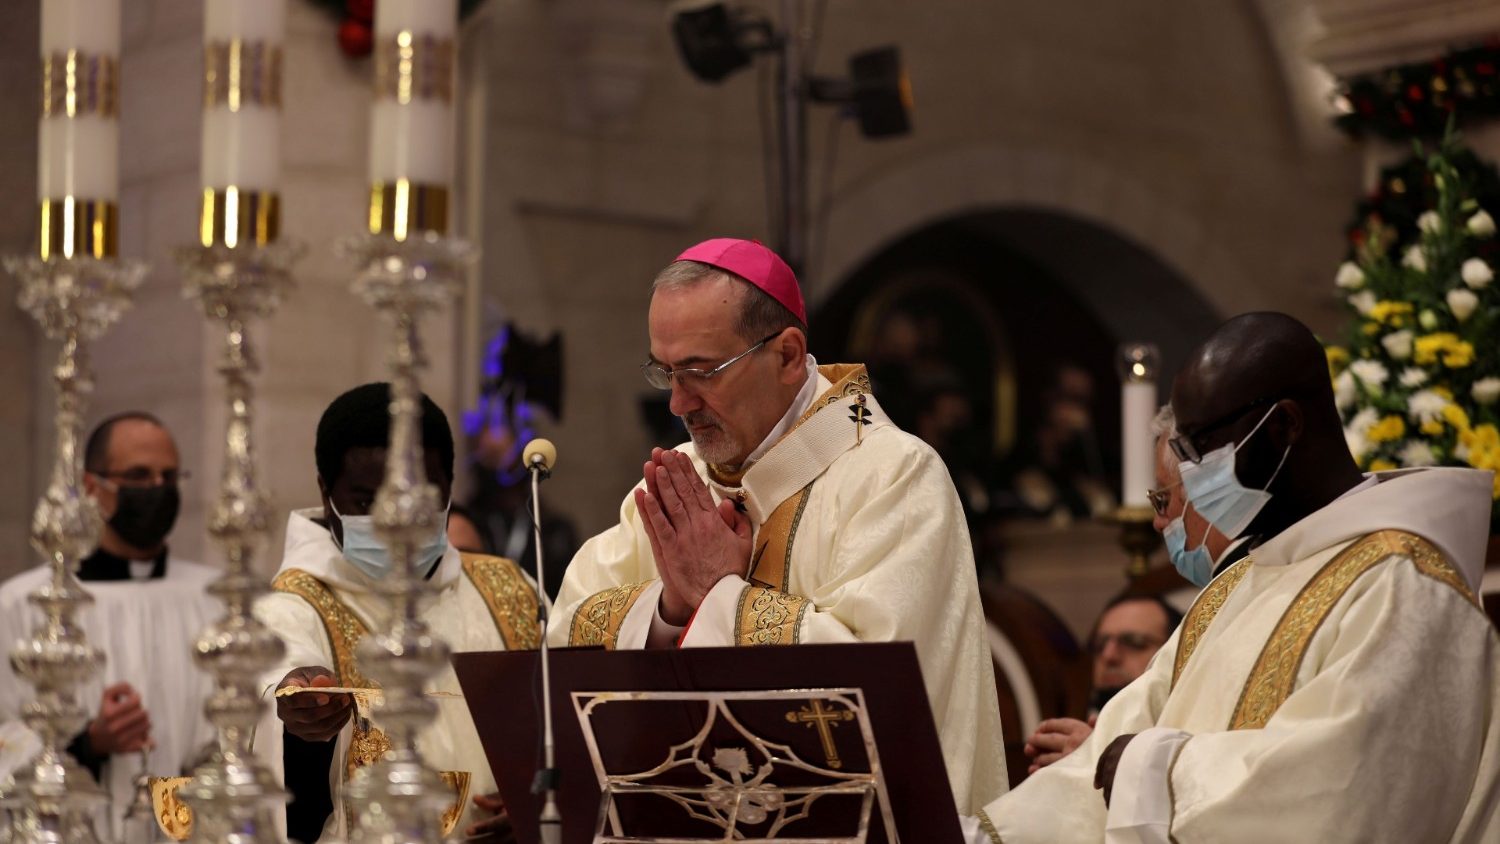 Άγιοι Τόποι: Ο Πατριάρχης της Ιερουσαλήμ ζητά ενότητα μέσα στην Εκκλησία